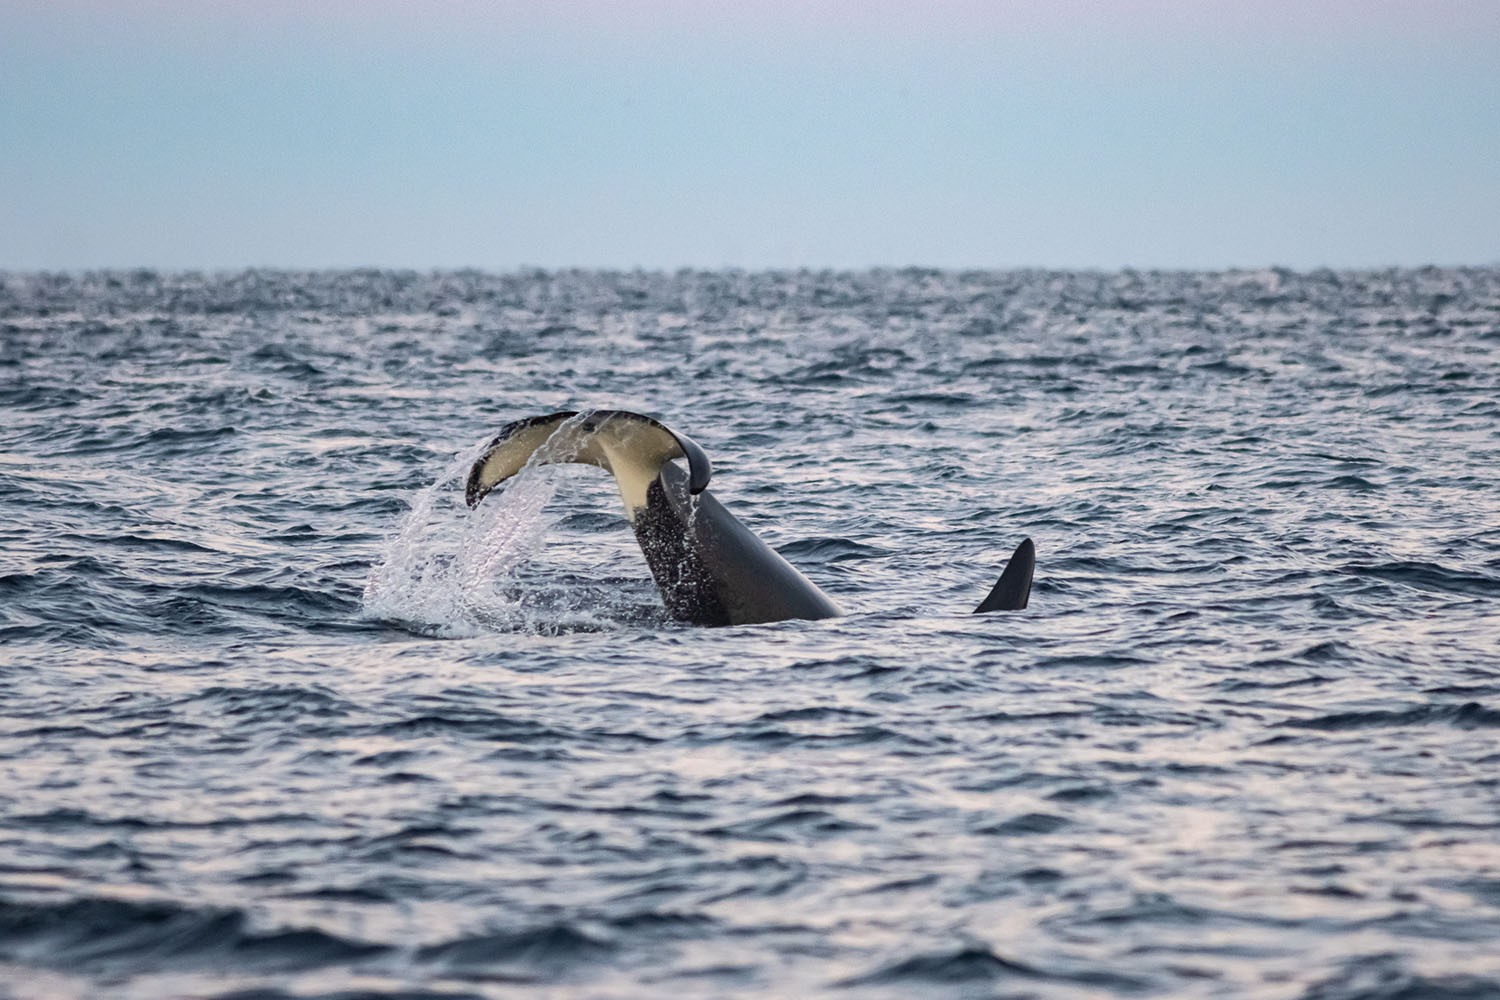 voyage scientifique - orques et baleines a bosse de norvege 32